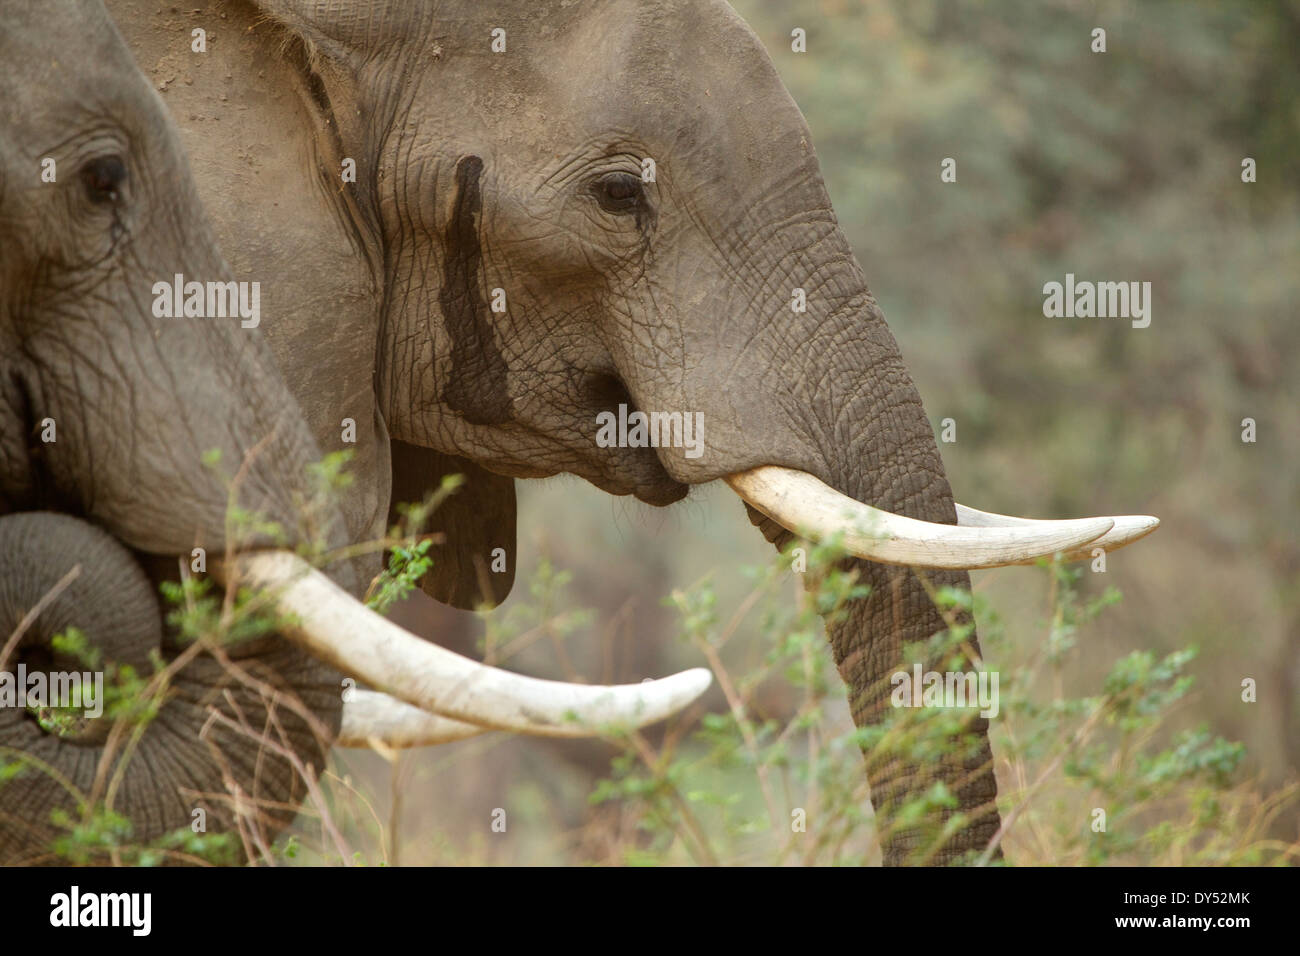 Afrikanische Elefanten Loxodonta Africana zwei Bullen der rechten Elefant weint aus seiner zeitlichen Drüse in der Regel einen Indikator Stockfoto